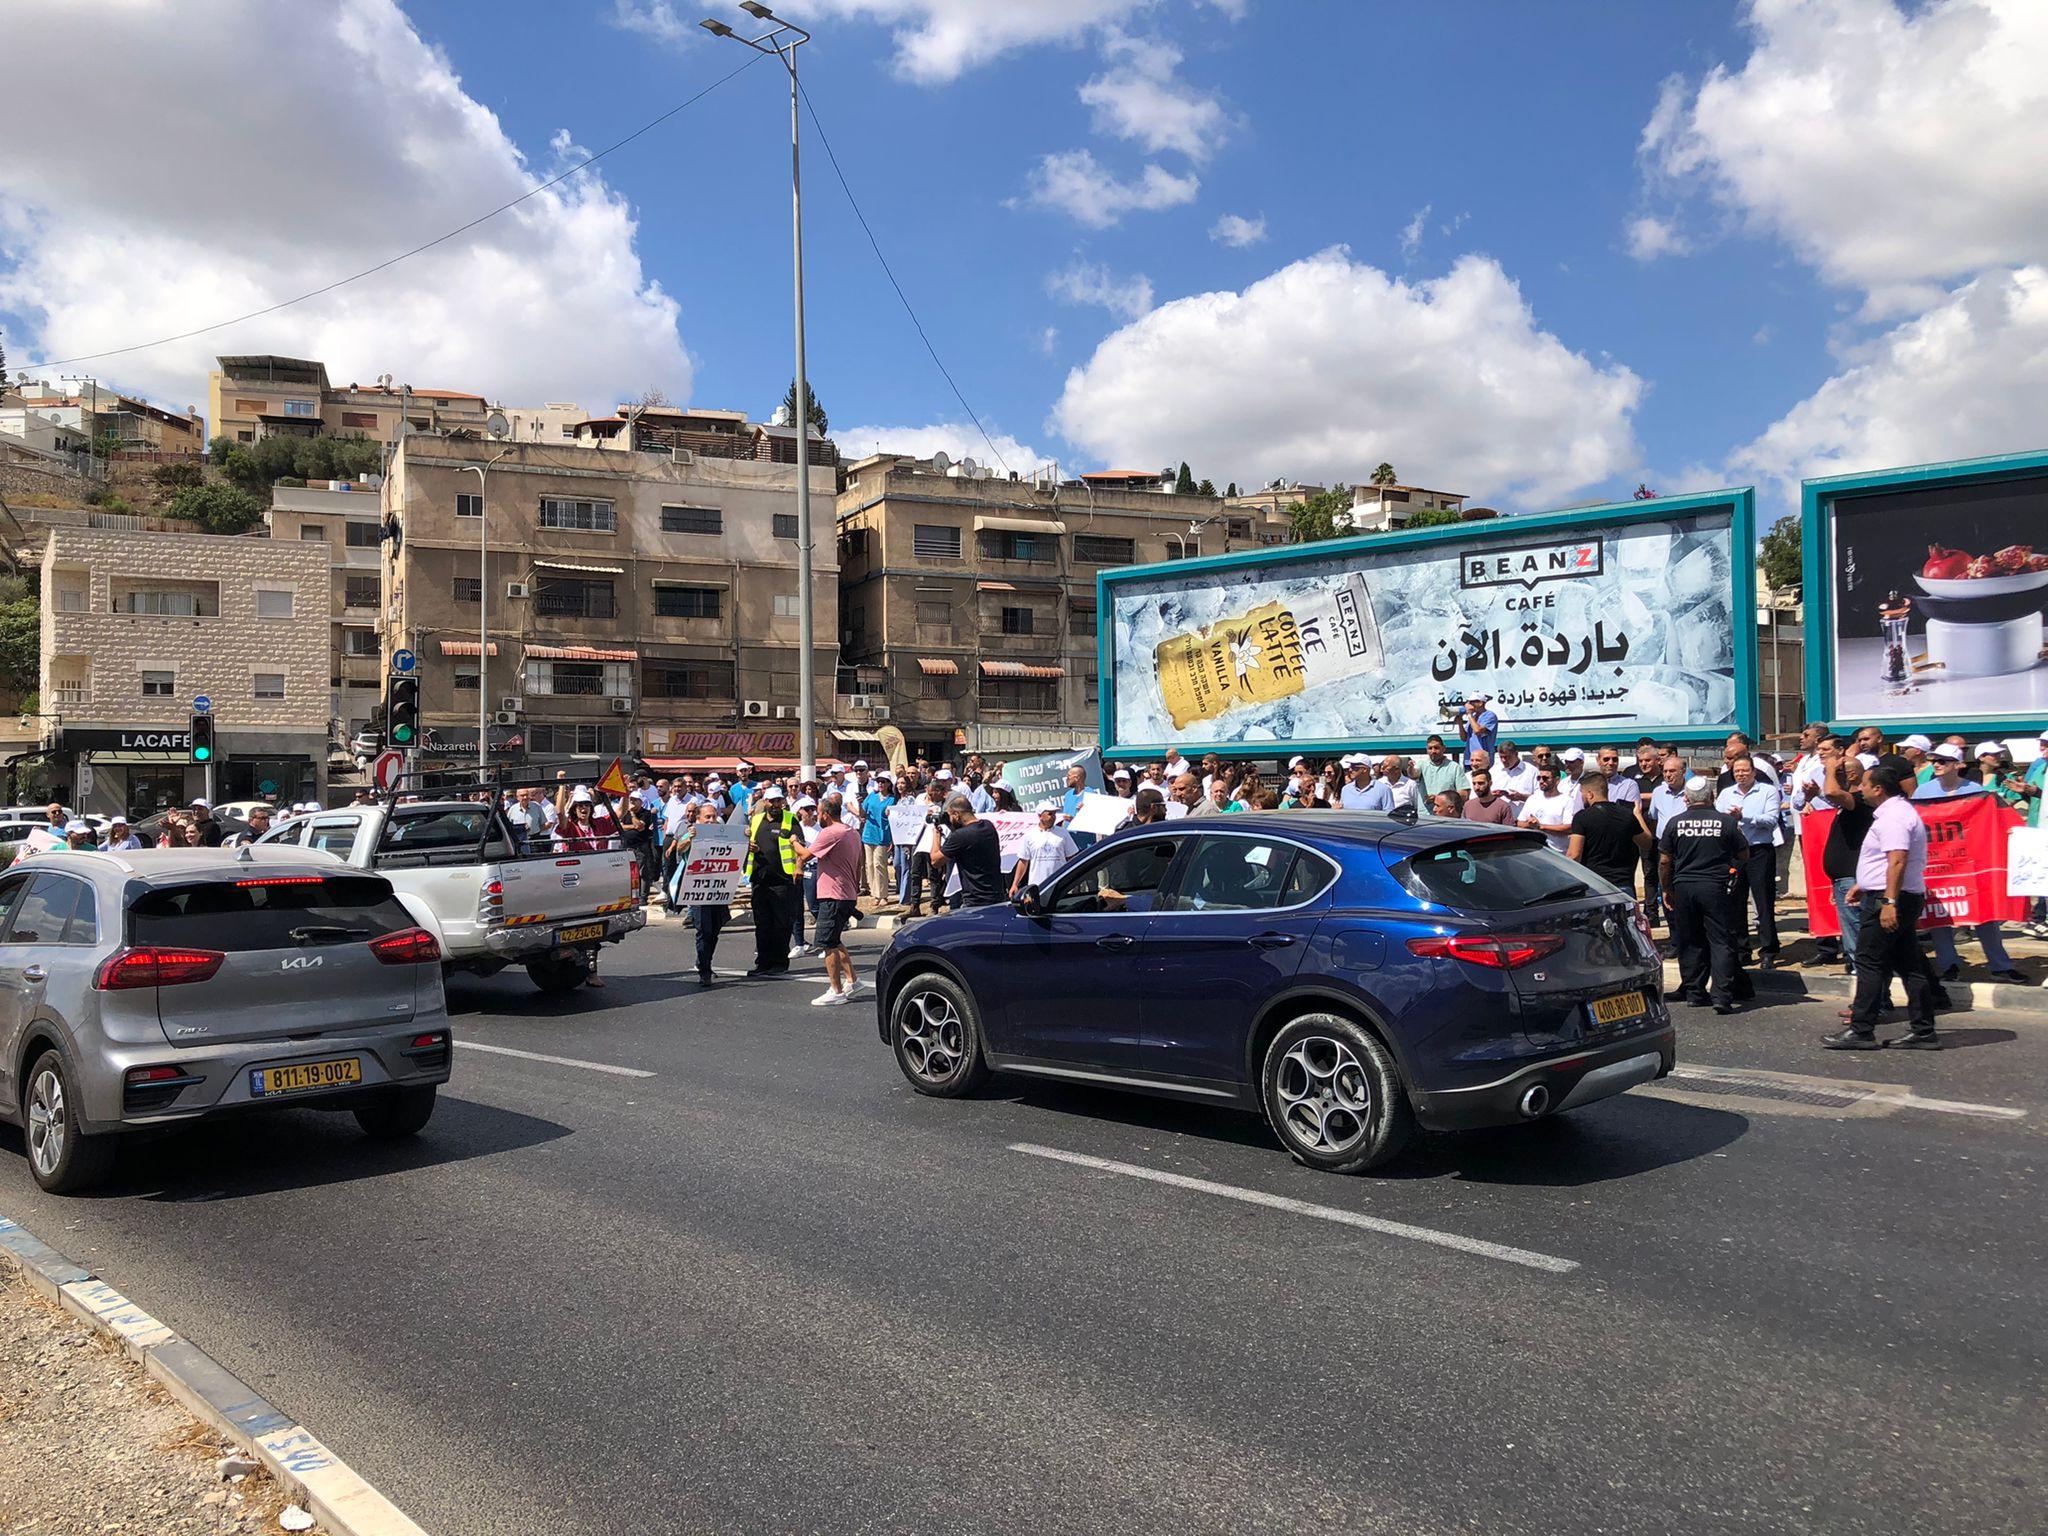 متظاهرون يغلقون شارعا رئيسيا احتجاجا على عدم إيفاء الحكومة بتحويل ميزانيات لمشفى بالناصرة